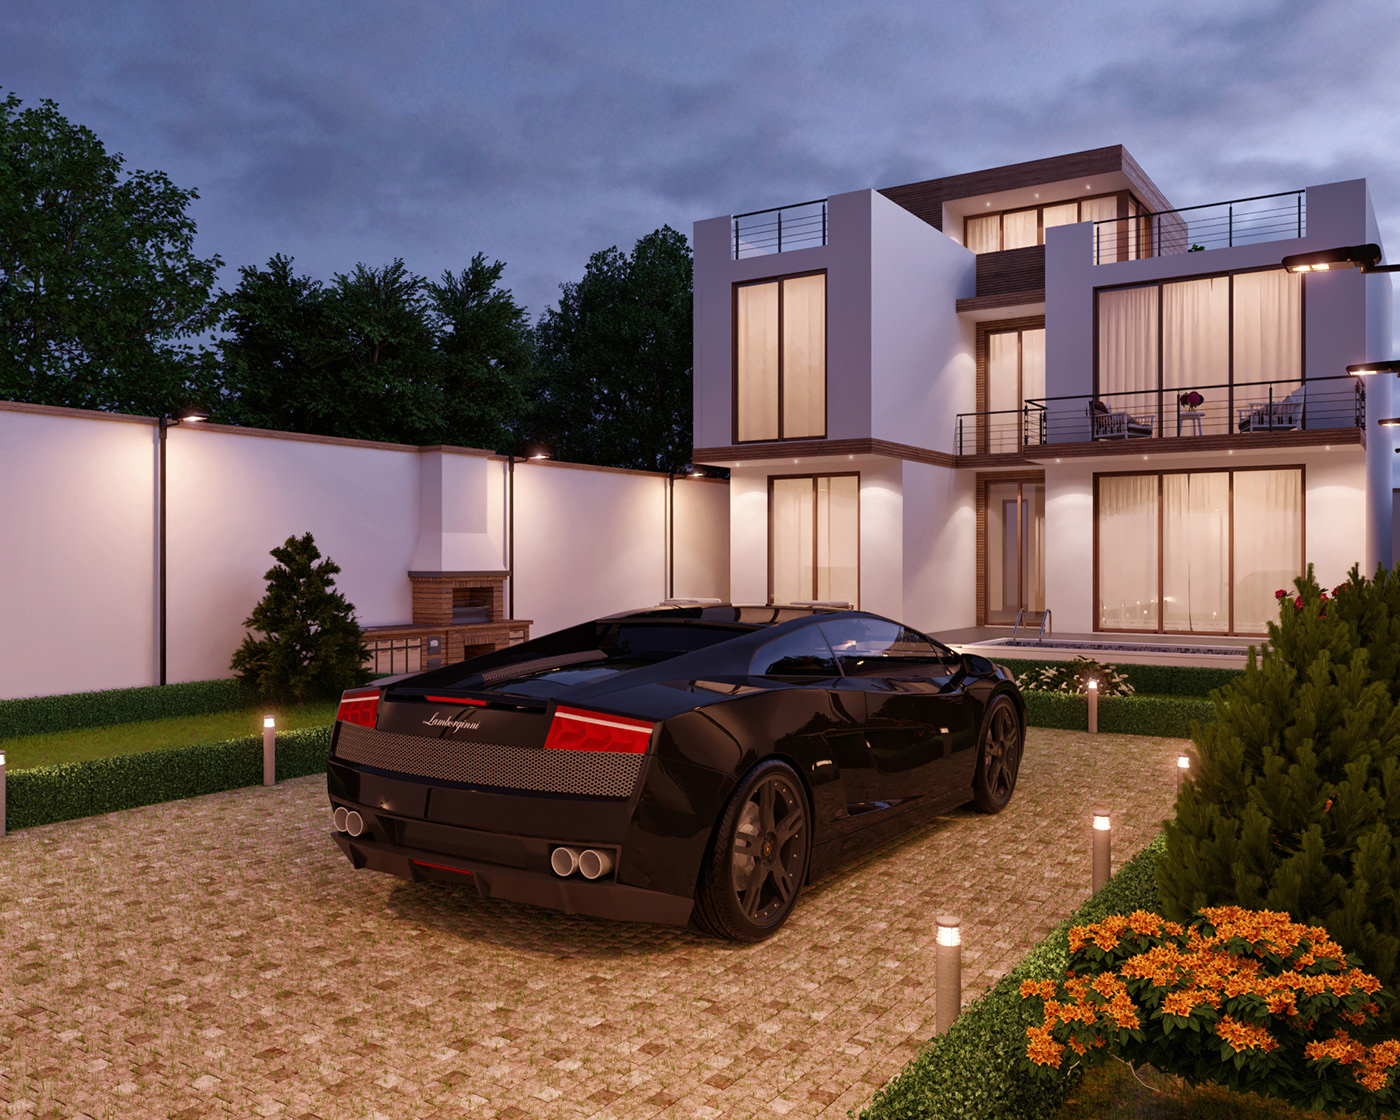 3dsmax corona photoshop Render visualization exterior house minimalismstyle luxry dayngiht